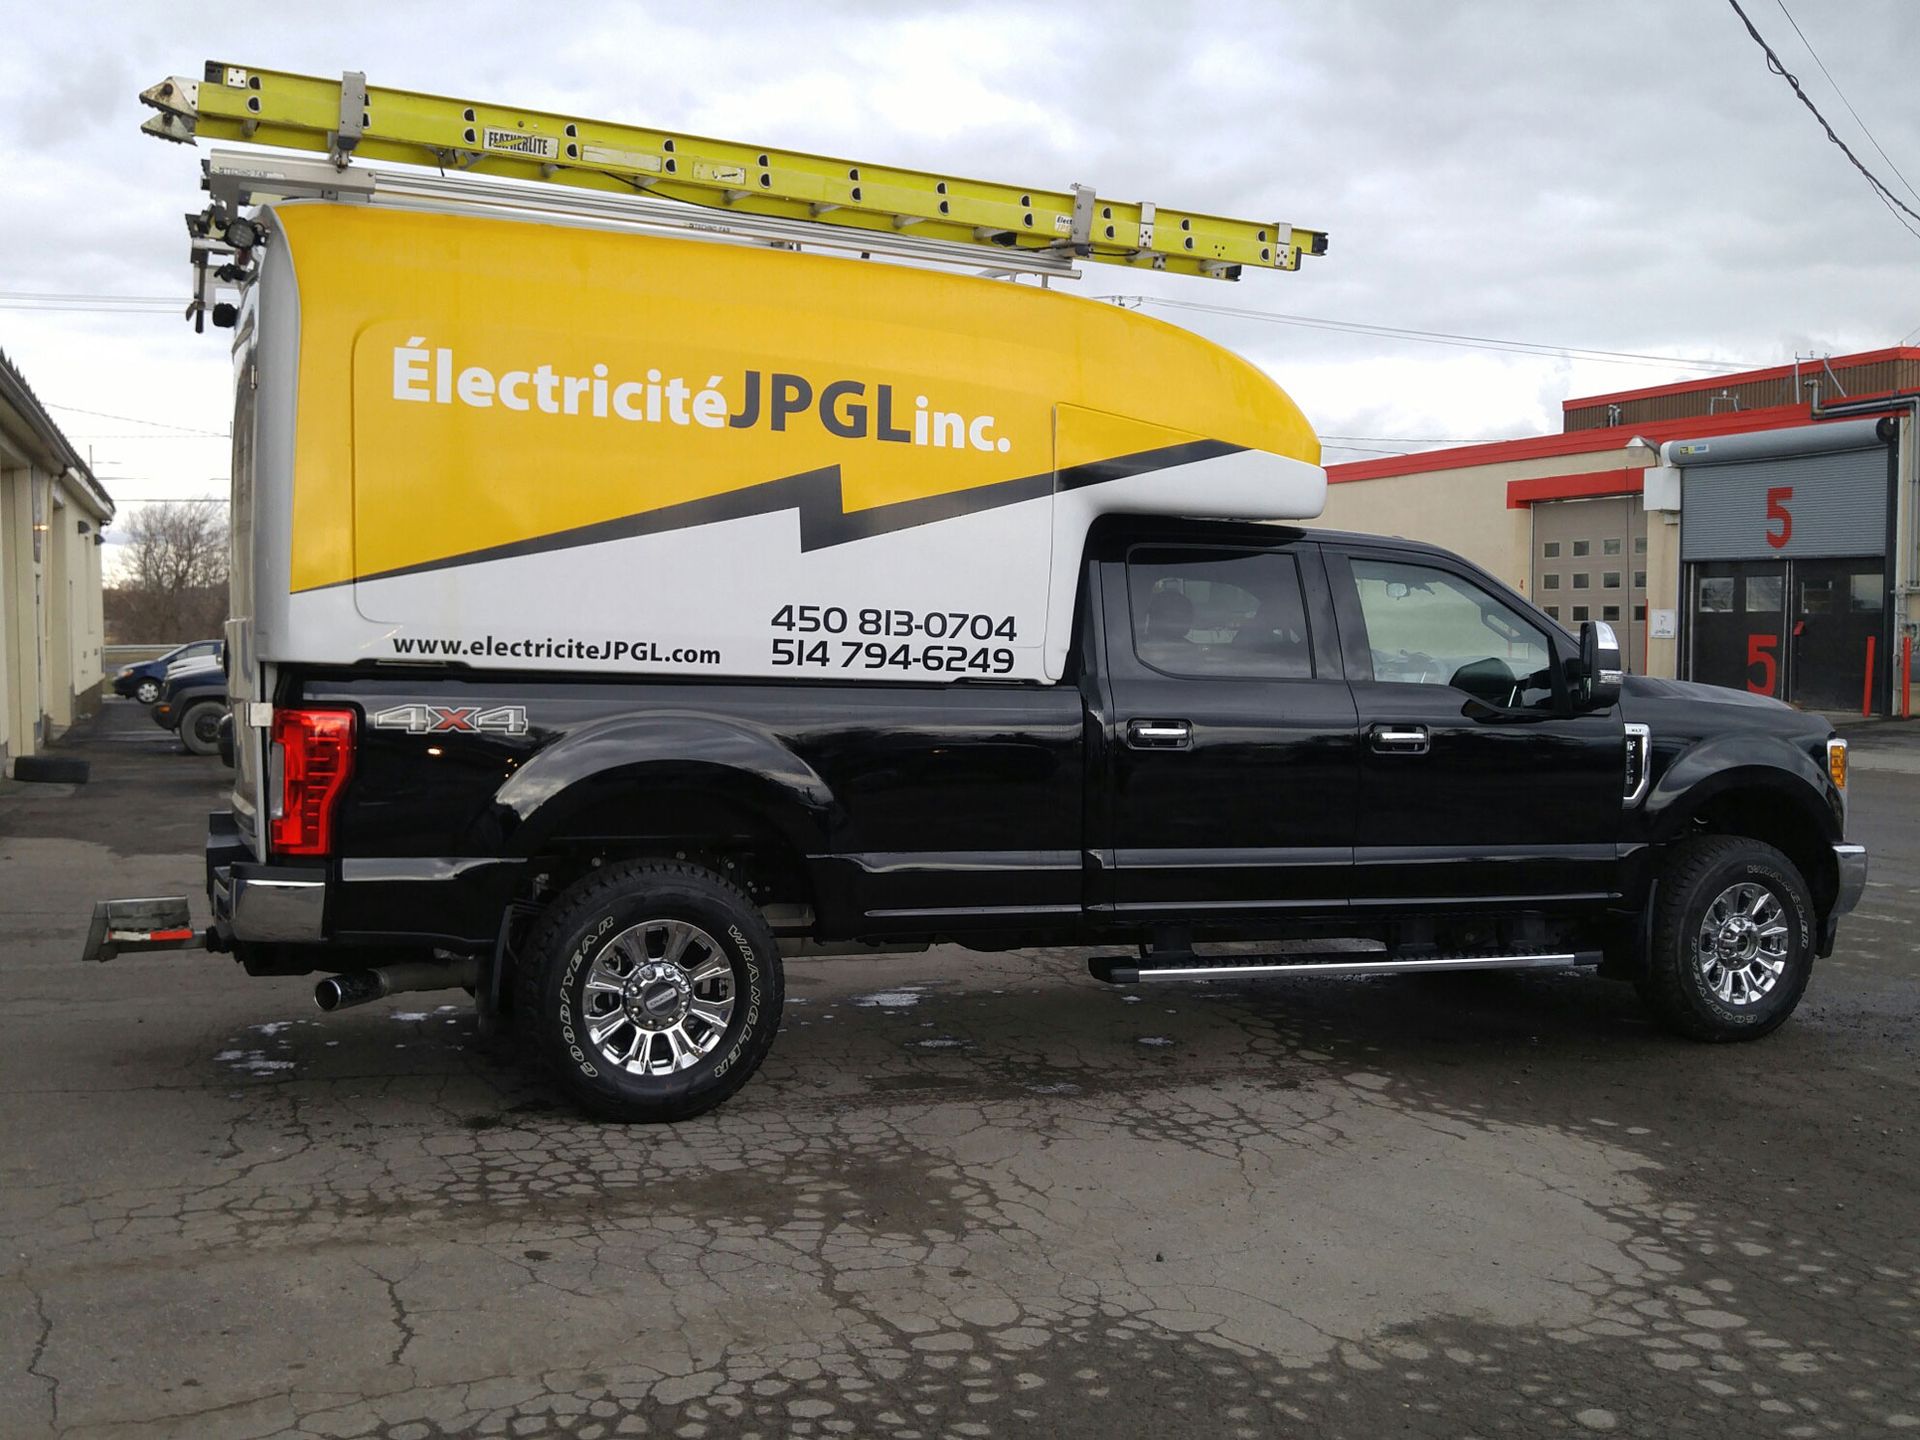 Un camion noir avec un auvent jaune qui dit electricite jpg inc.